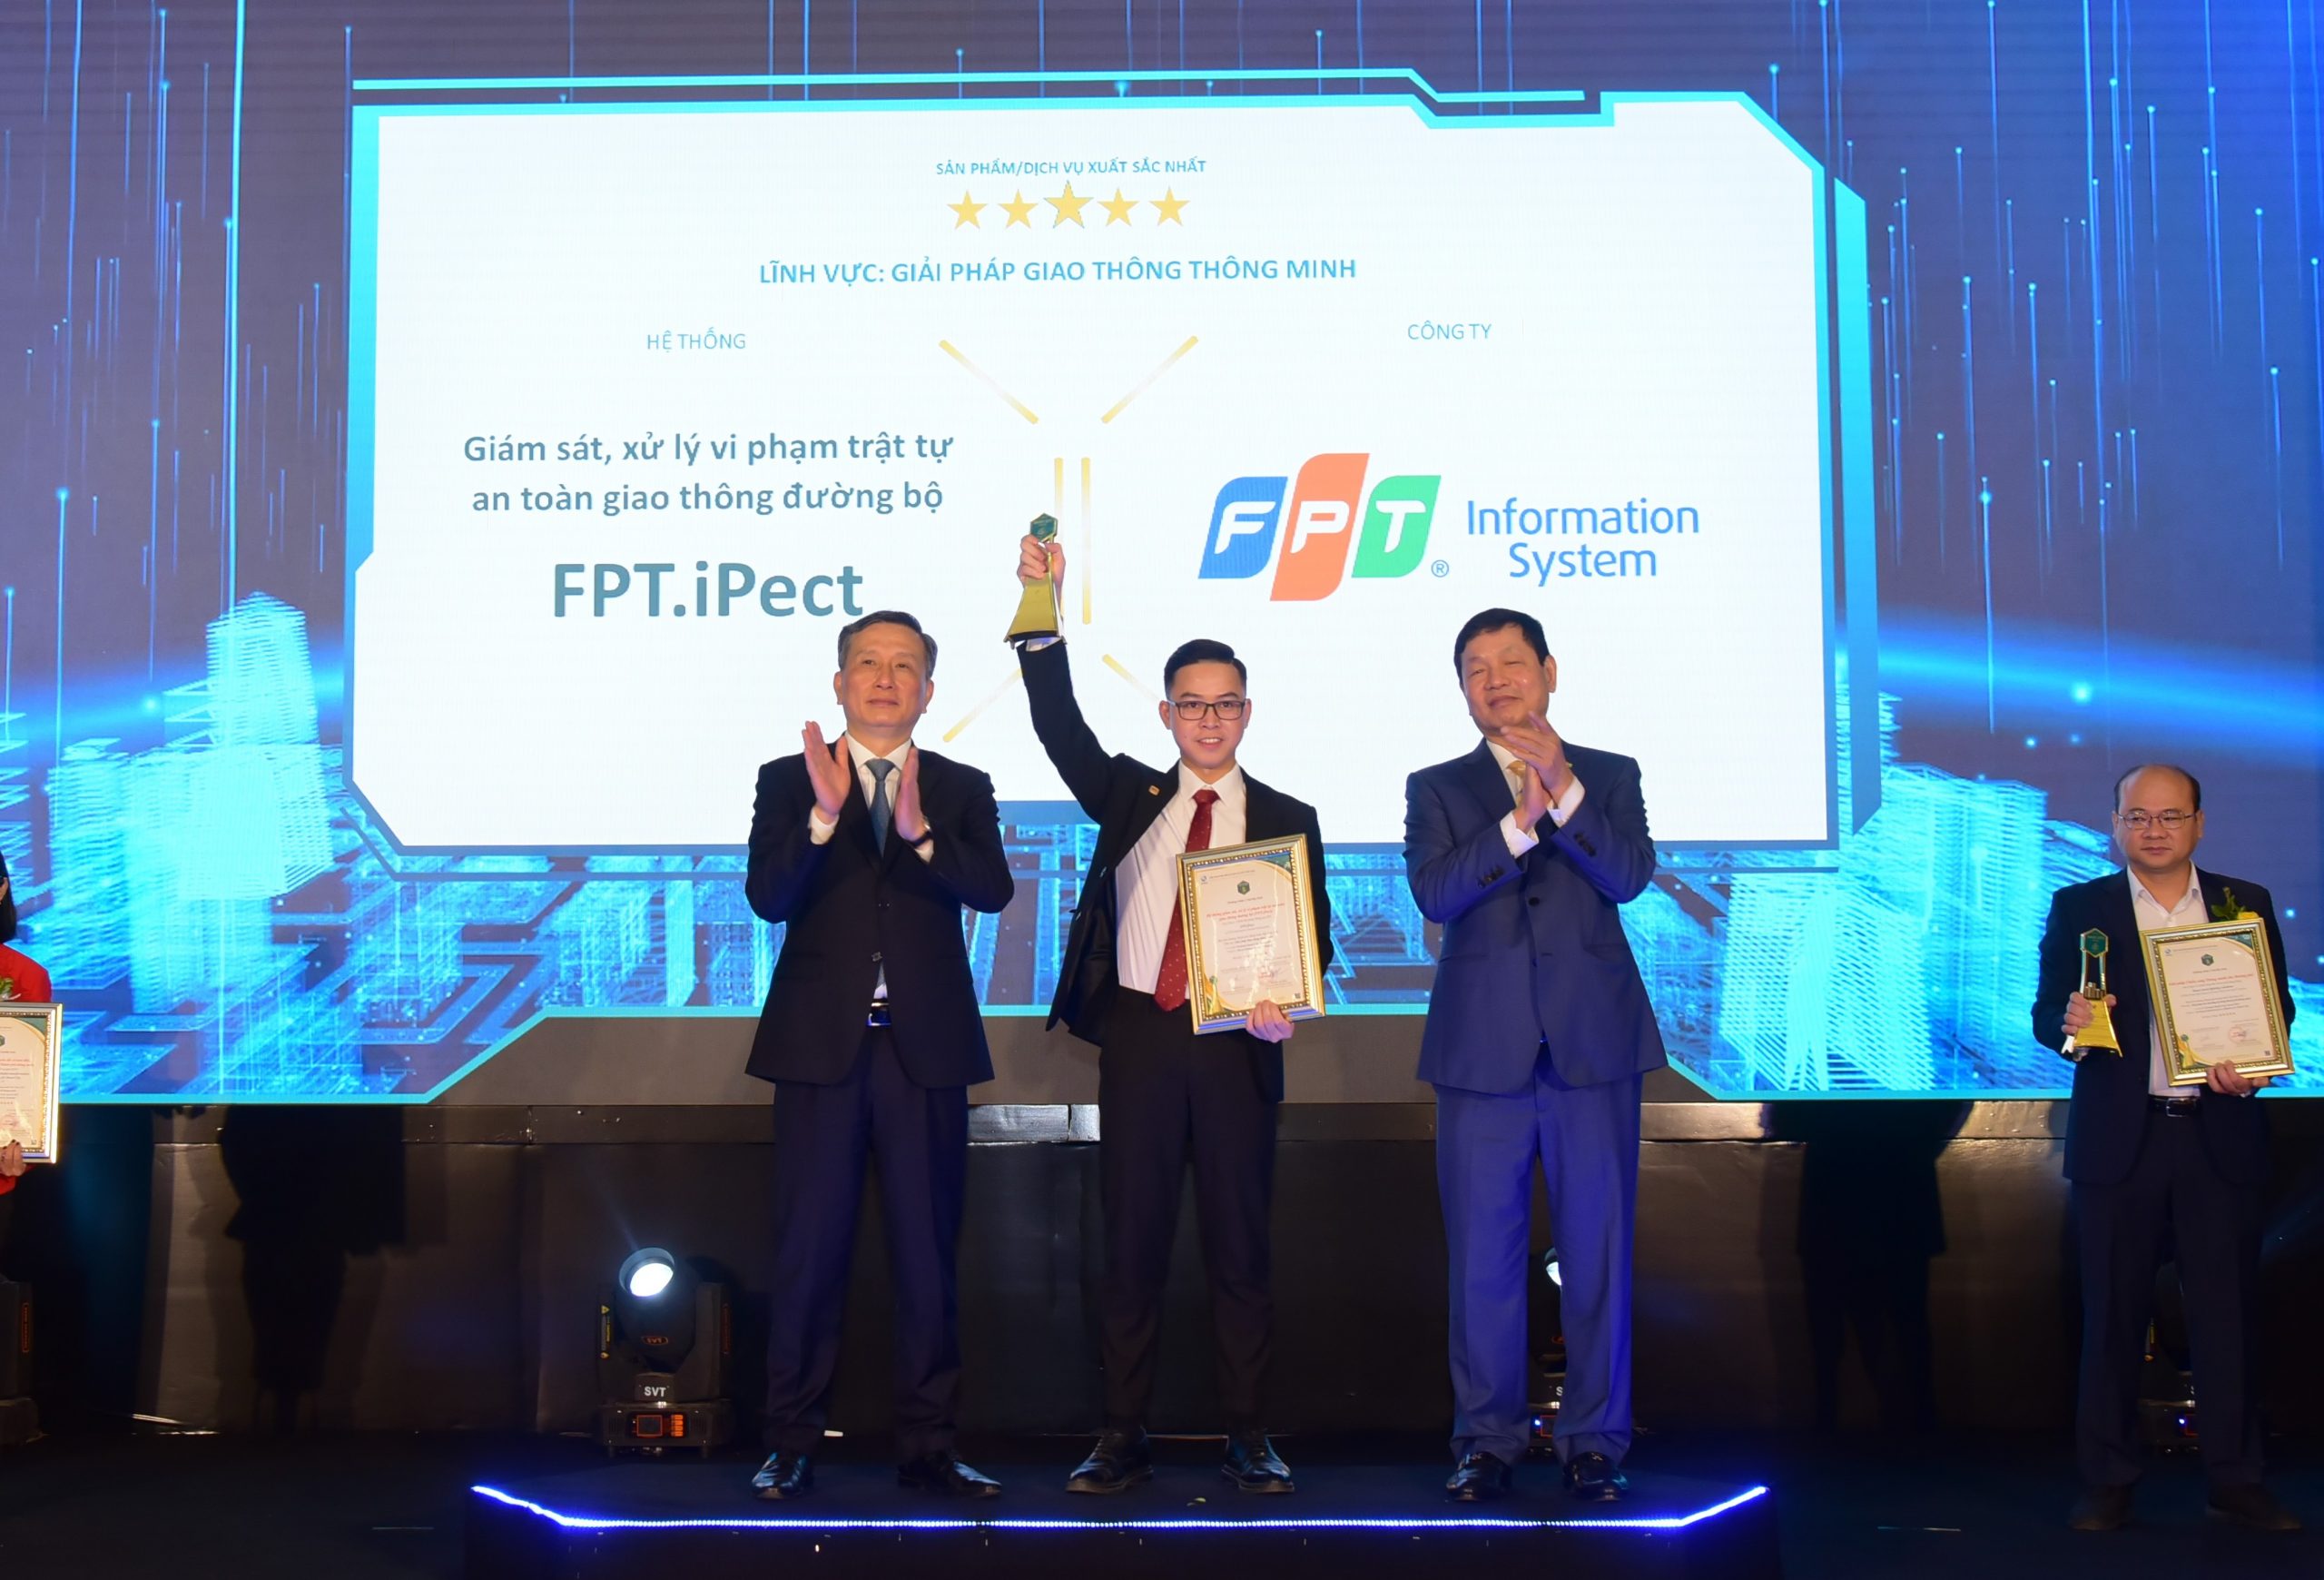 Hệ thống giám sát, xử lý vi phạm trật tự an toàn giao thông đường bộ (FPT.iPect) đạt Giải thưởng Thành phố thông minh Việt Nam 2021 (xếp hạng 5 sao)